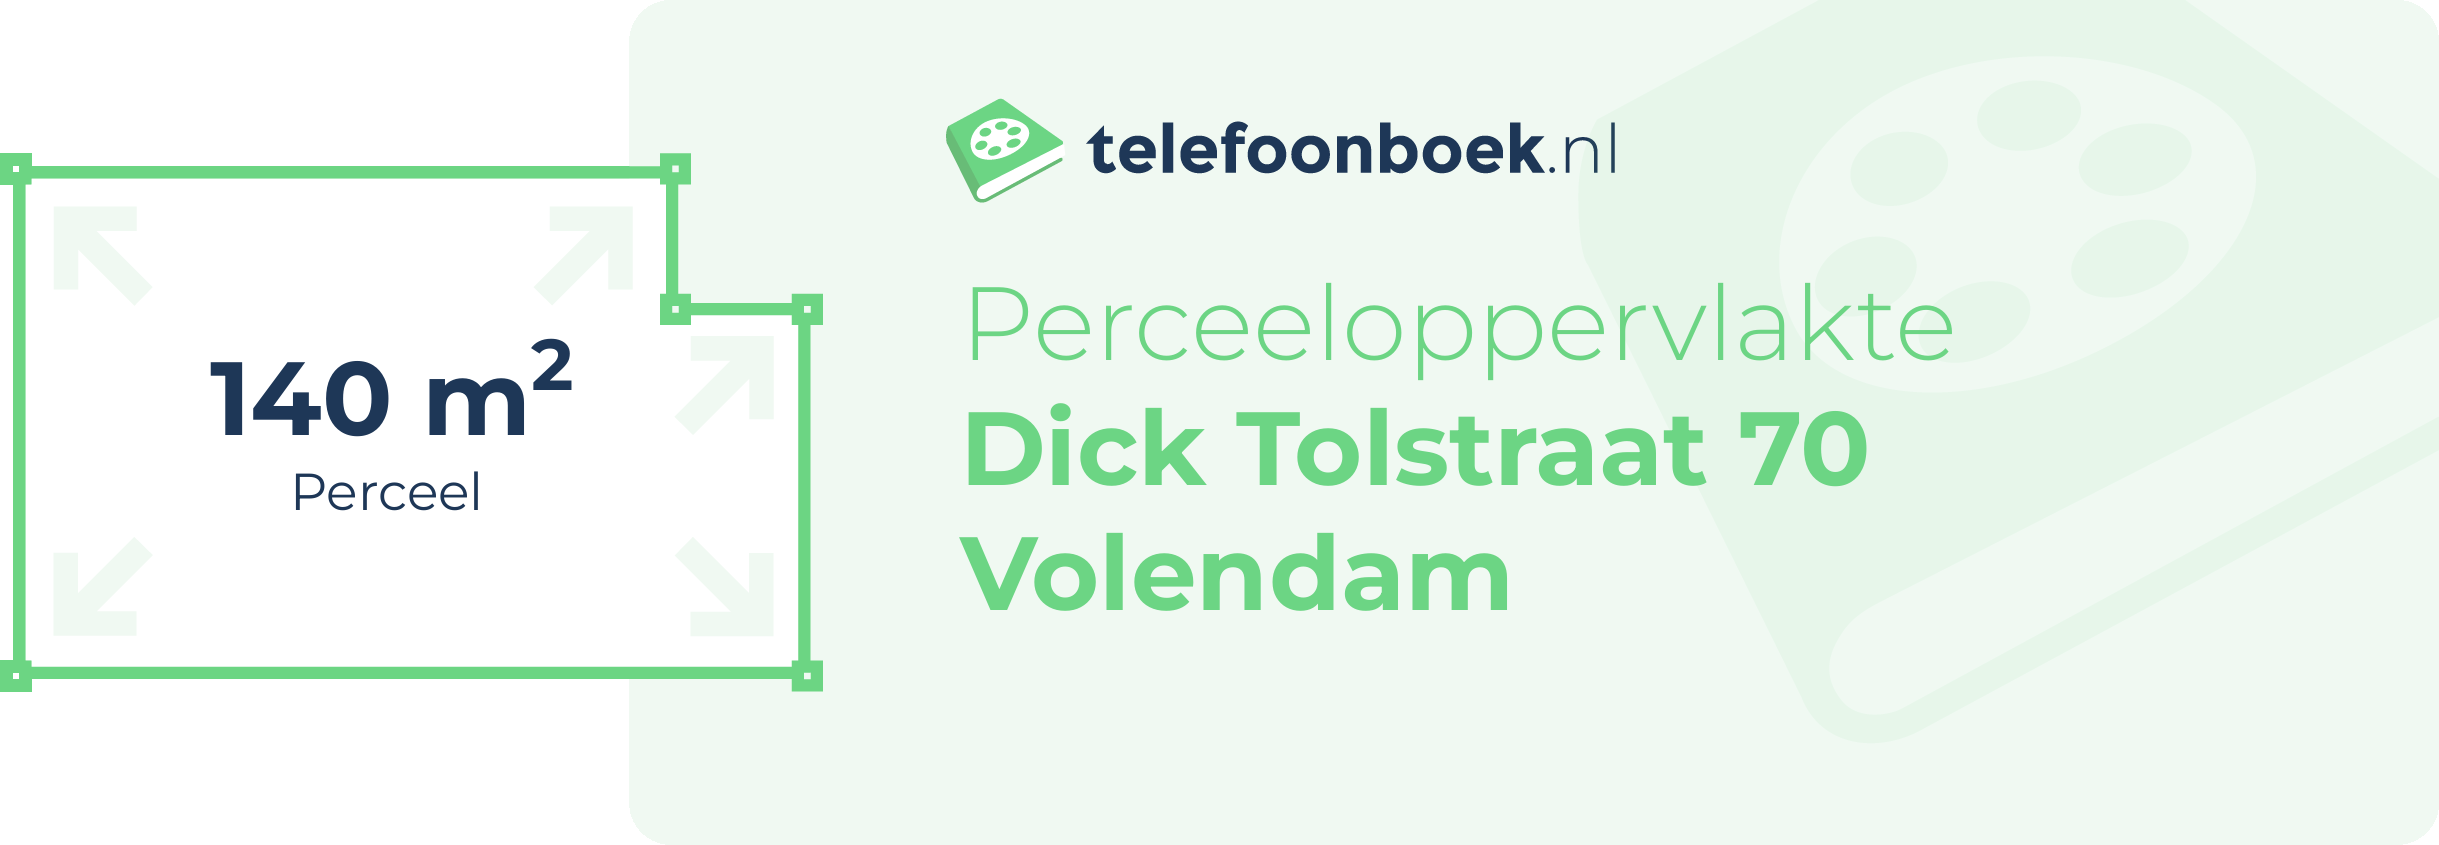 Perceeloppervlakte Dick Tolstraat 70 Volendam